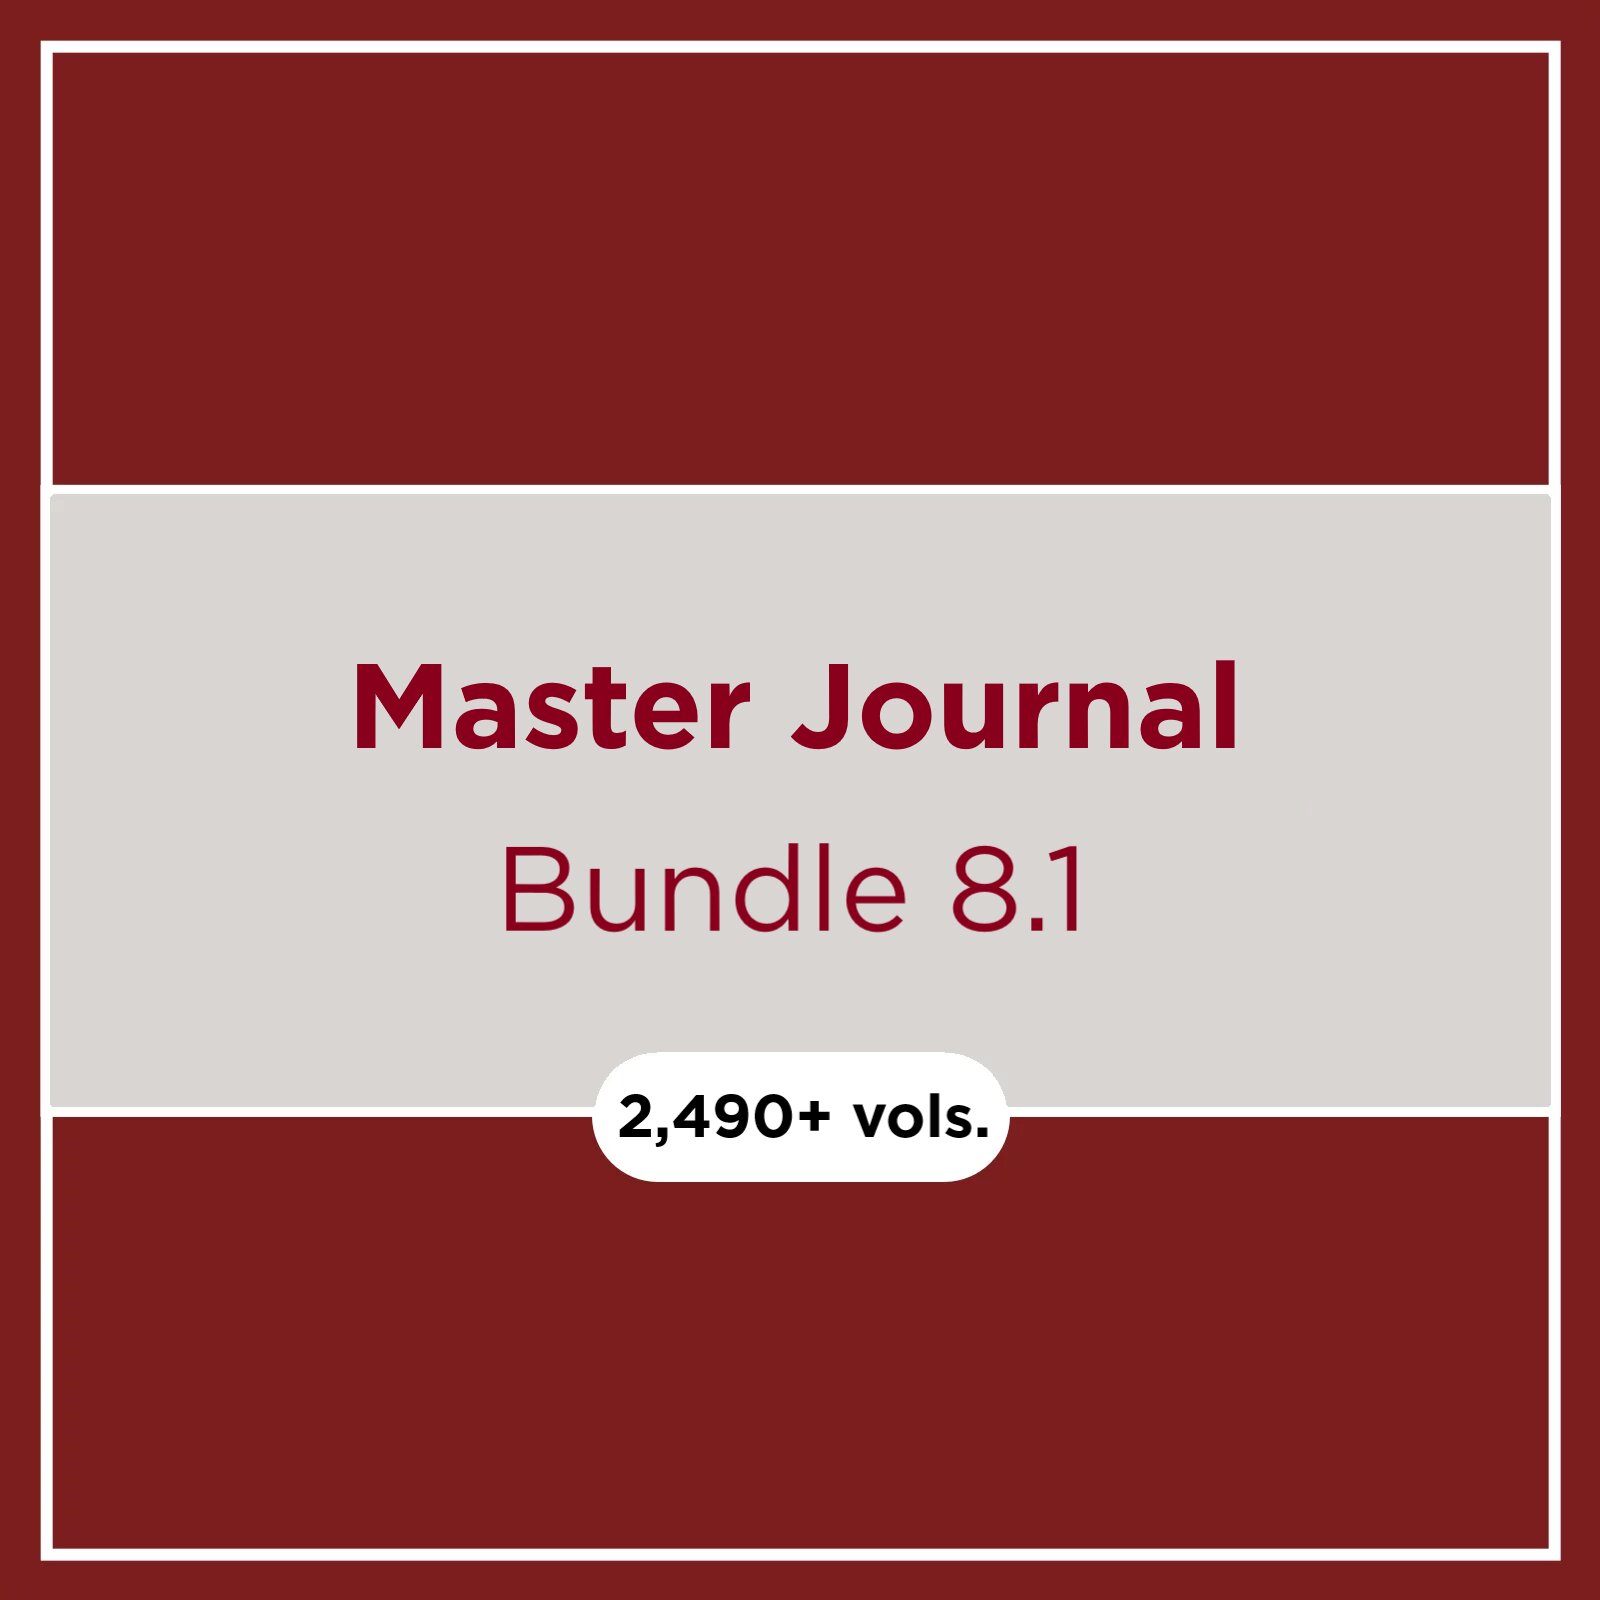 Master Journal Bundle 8.1 (2,490+ vols.)